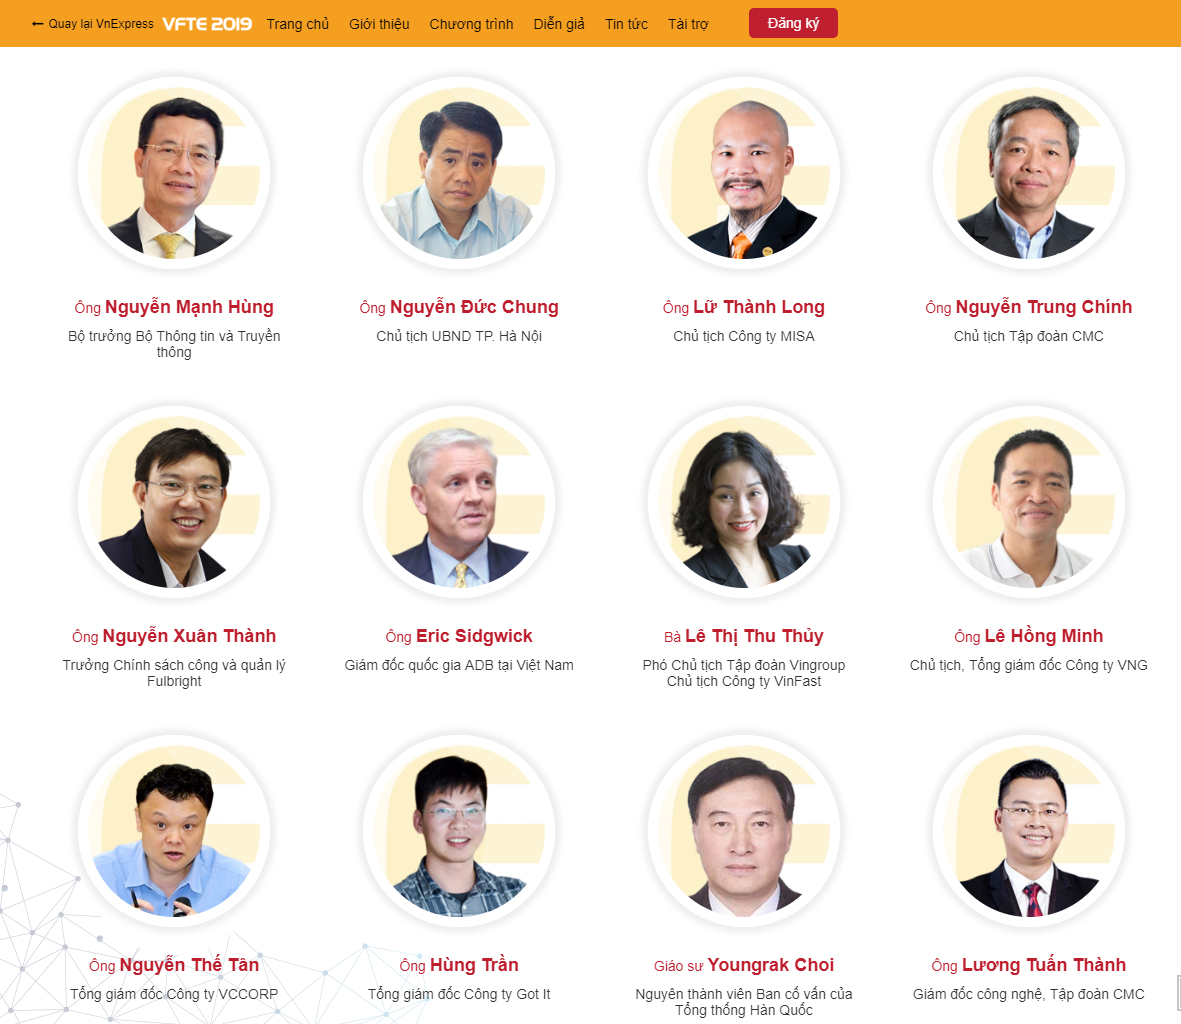 Ông Lữ Thành Long - Chủ tịch HĐQT Công ty Cổ phần MISA - sẽ là một trong những diễn giả trình bày trong Diễn đàn quốc gia Phát triển doanh nghiệp công nghệ Việt Nam